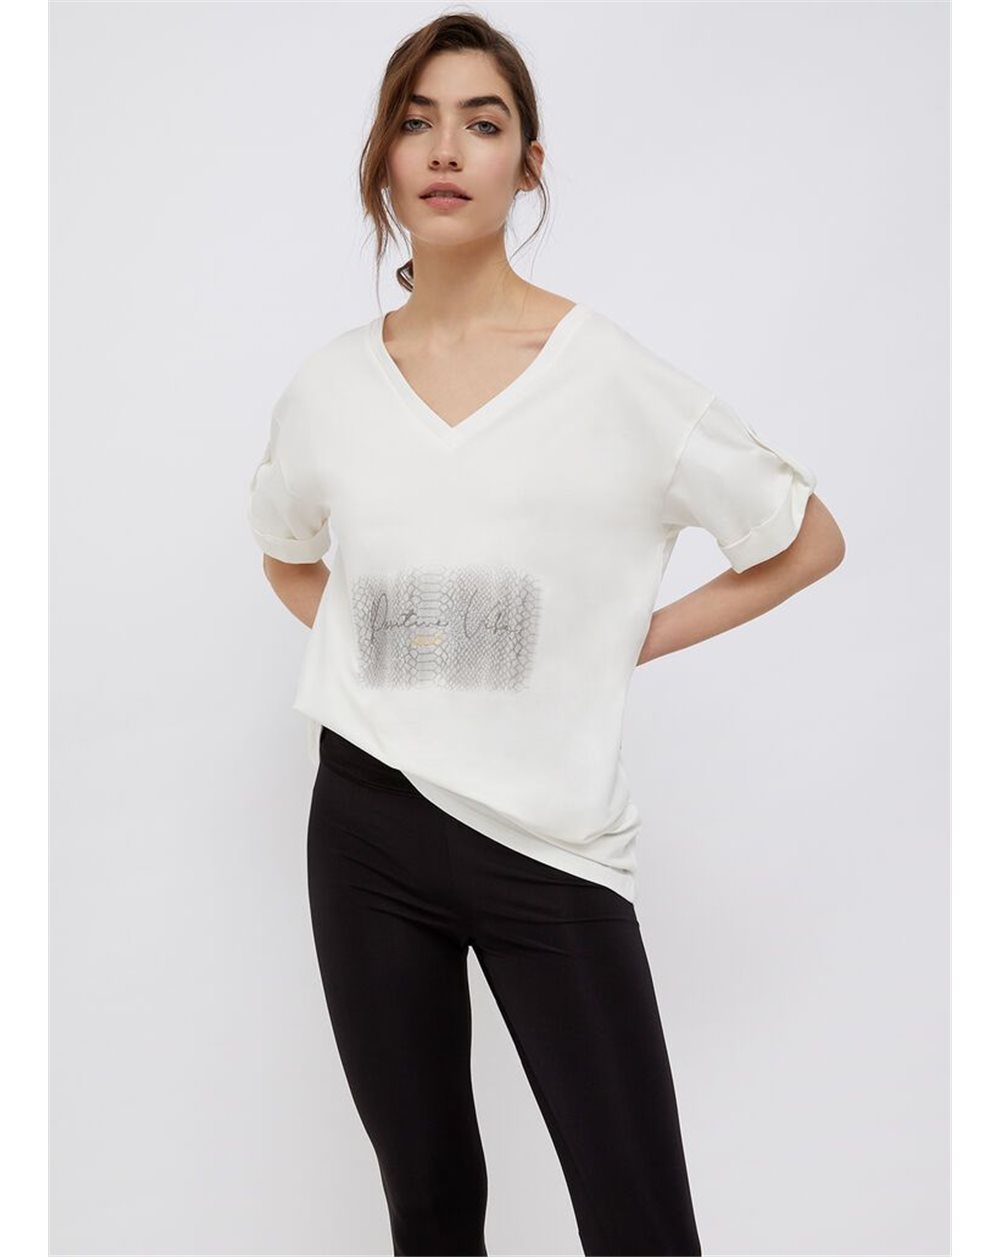 LIU-JO maxi t-shirt donna BIANCO in cotone con stampa grigia, scollo V